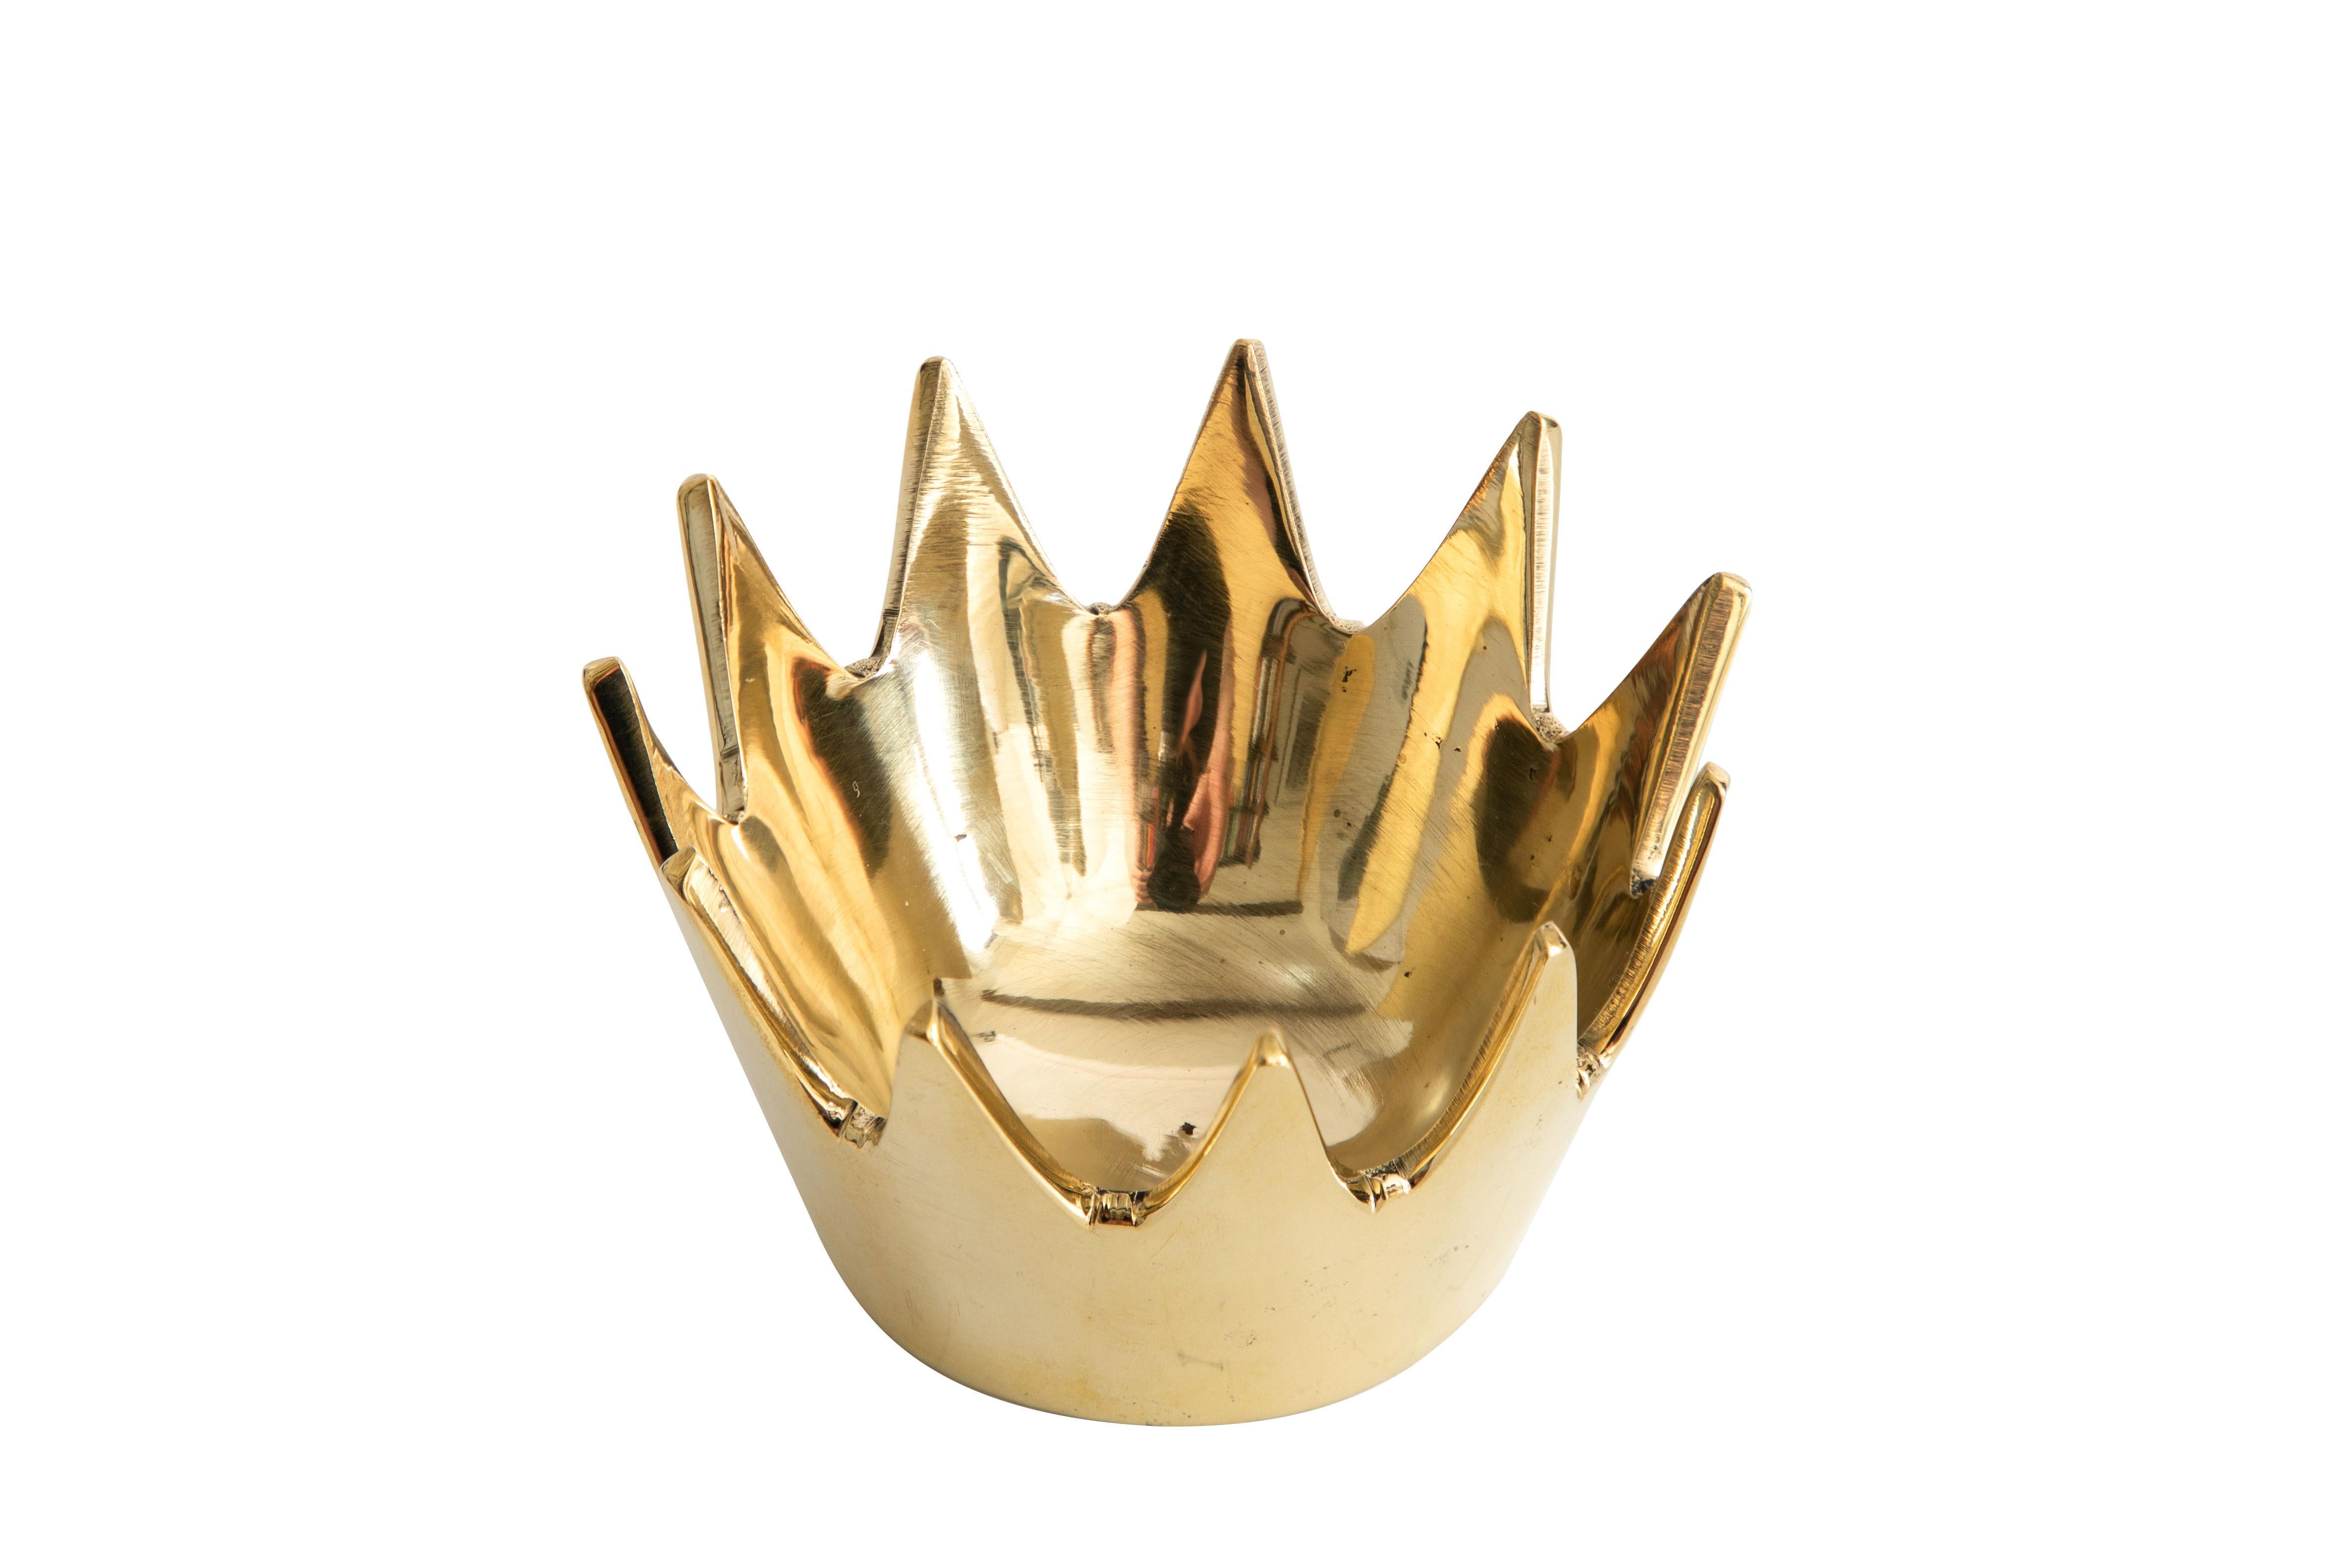 Bol en laiton Carl Auböck modèle #3600 'Crown'. Conçue dans les années 1950, cette coupe viennoise incroyablement raffinée et sculpturale est exécutée en laiton poli. Conçu à l'origine pour servir de cendrier, ce récipient décoratif peut avoir